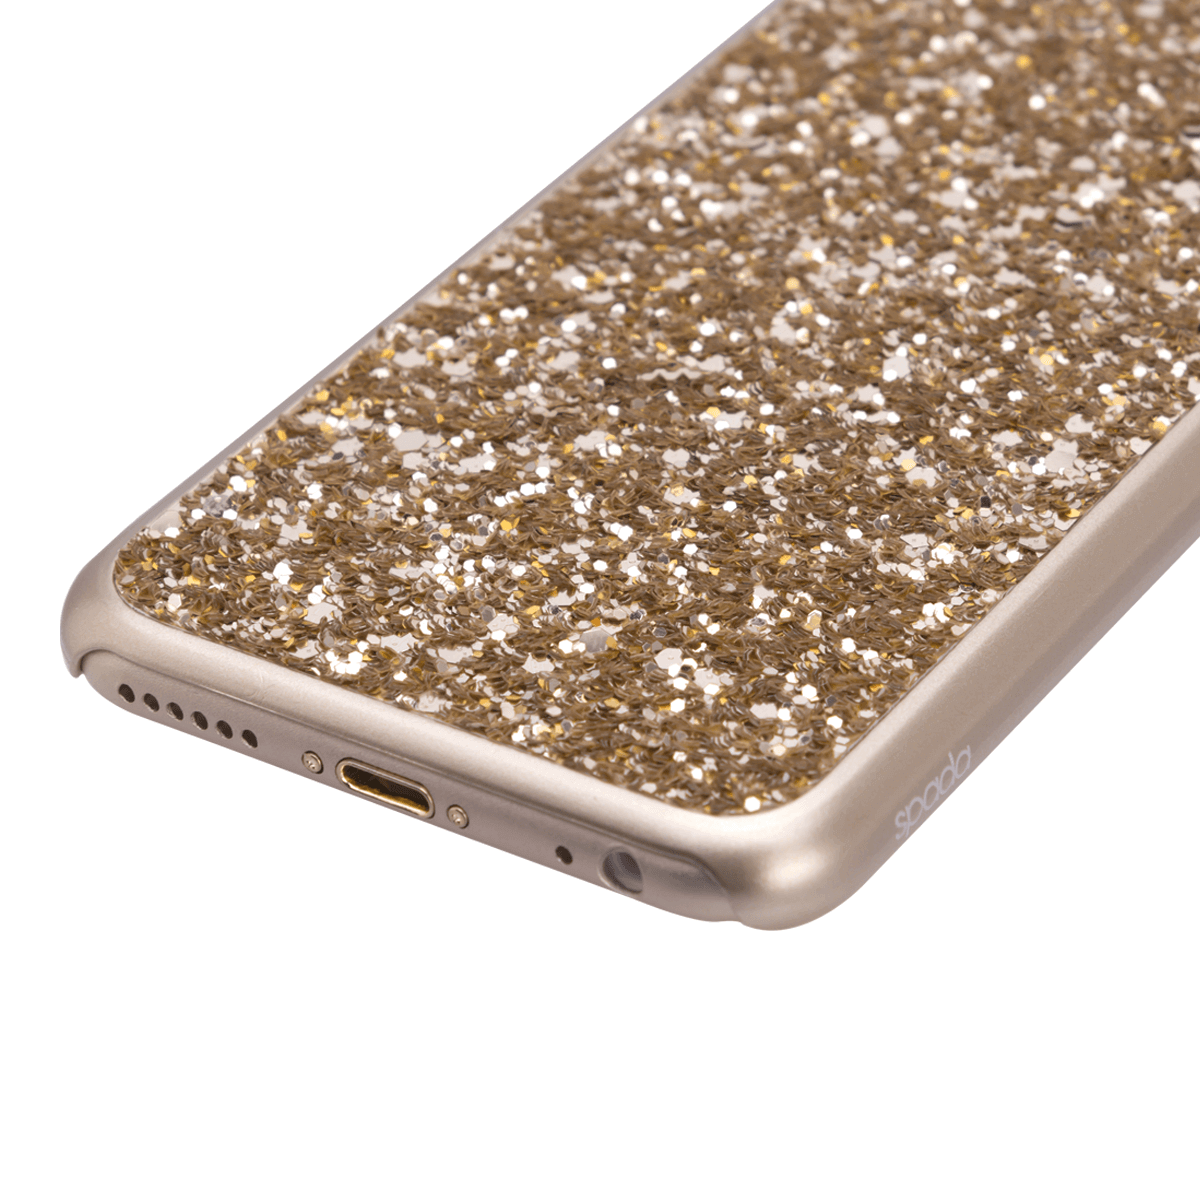 iPhone 6/6S Plus için spada Glitter Gold renk Kapak